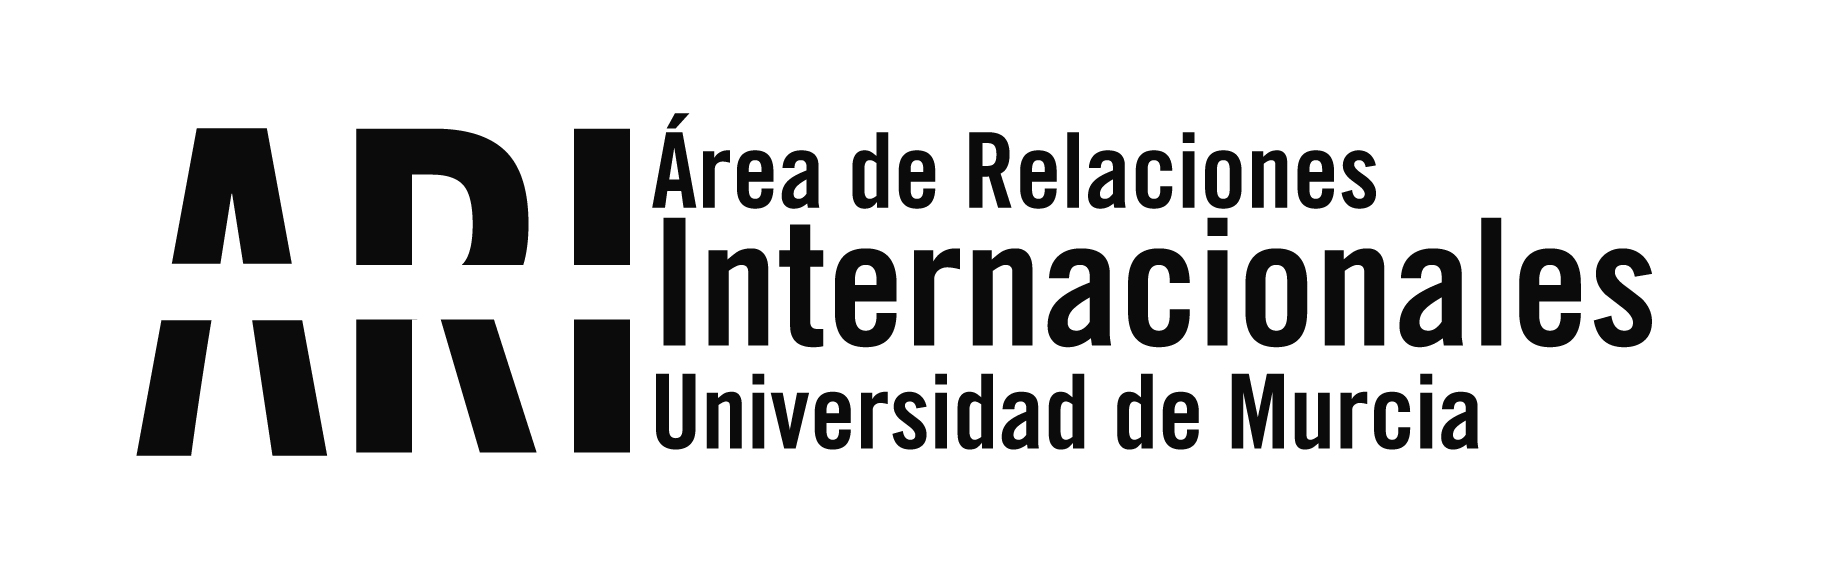 2014.09 BUMI Recepción Institucional - Eventos - Área de Relaciones Internacionales